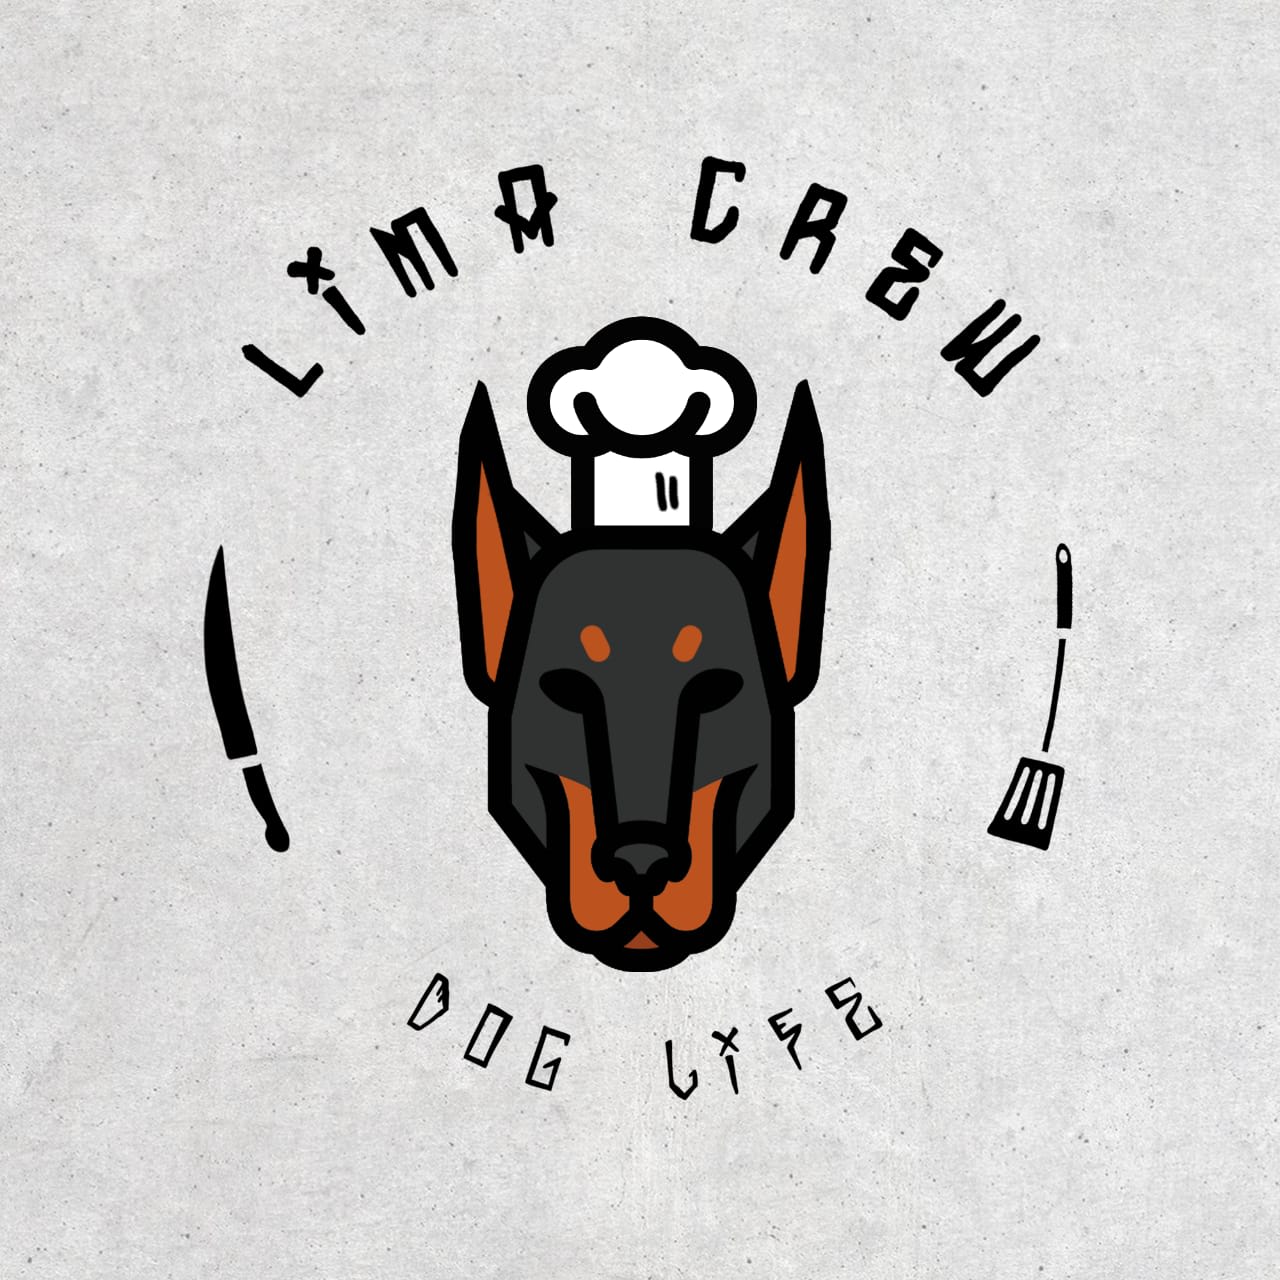 Lima Crew